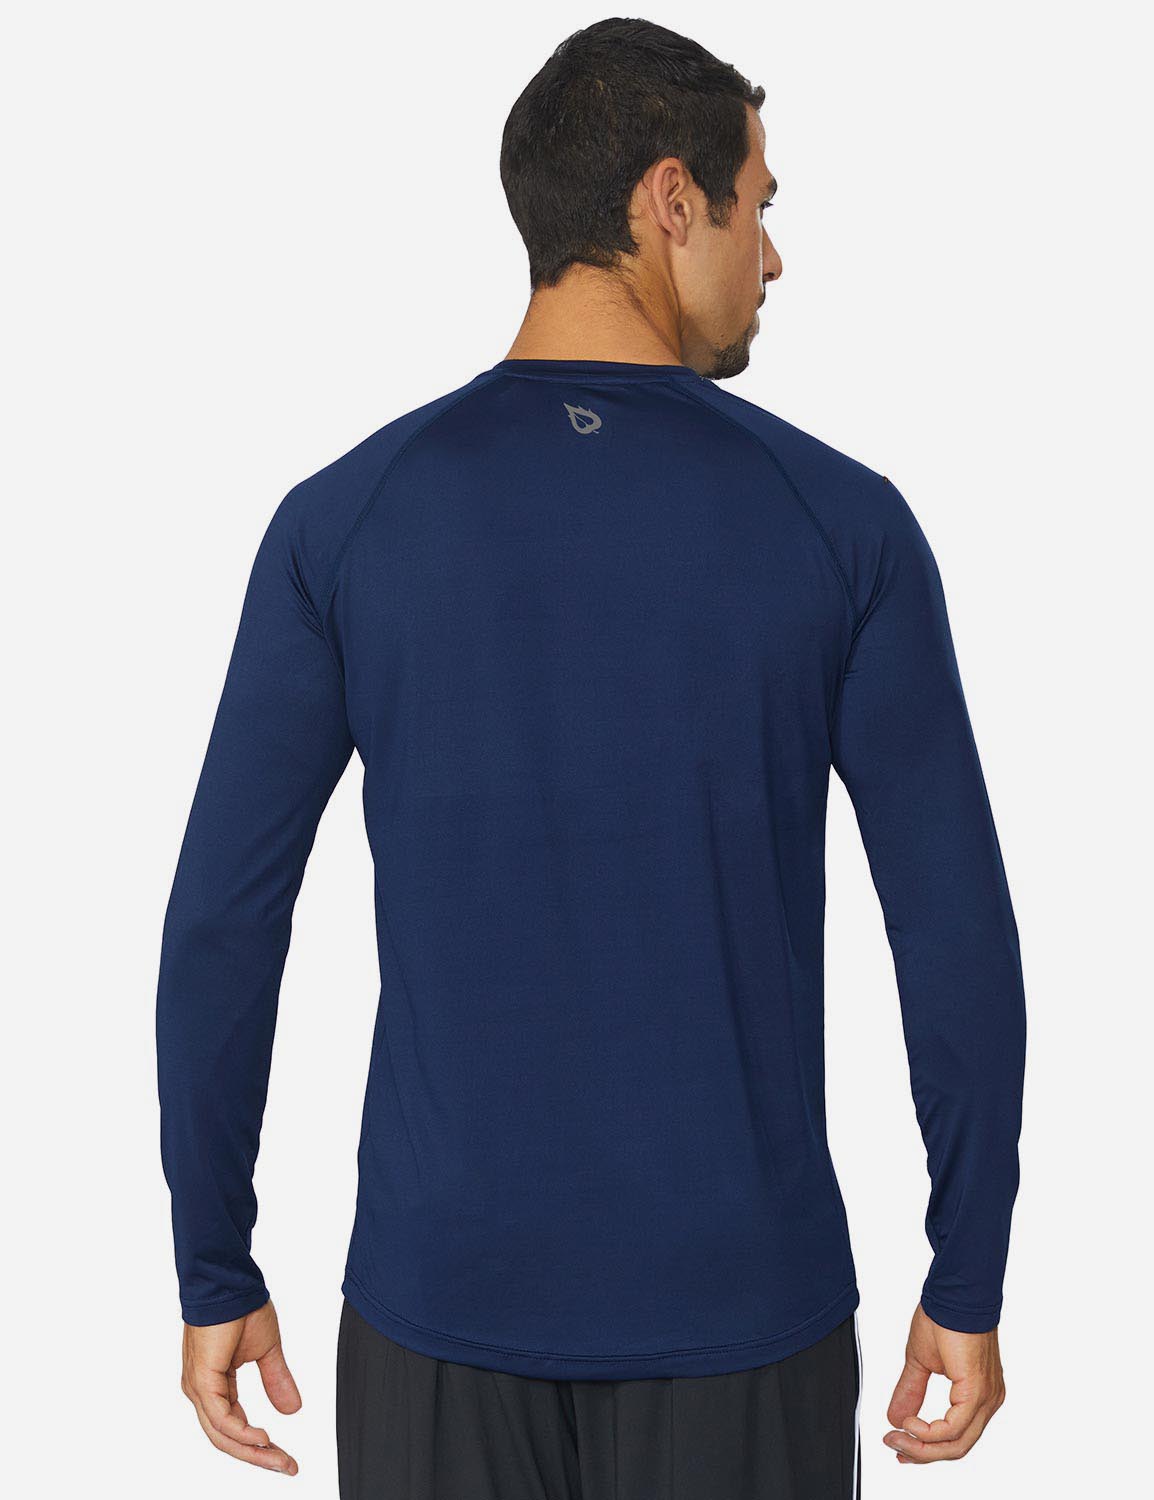 Baleaf Men's Workout Crew-Neck Slim-Cut Long Sleeved Shirt abd195 Navy Back